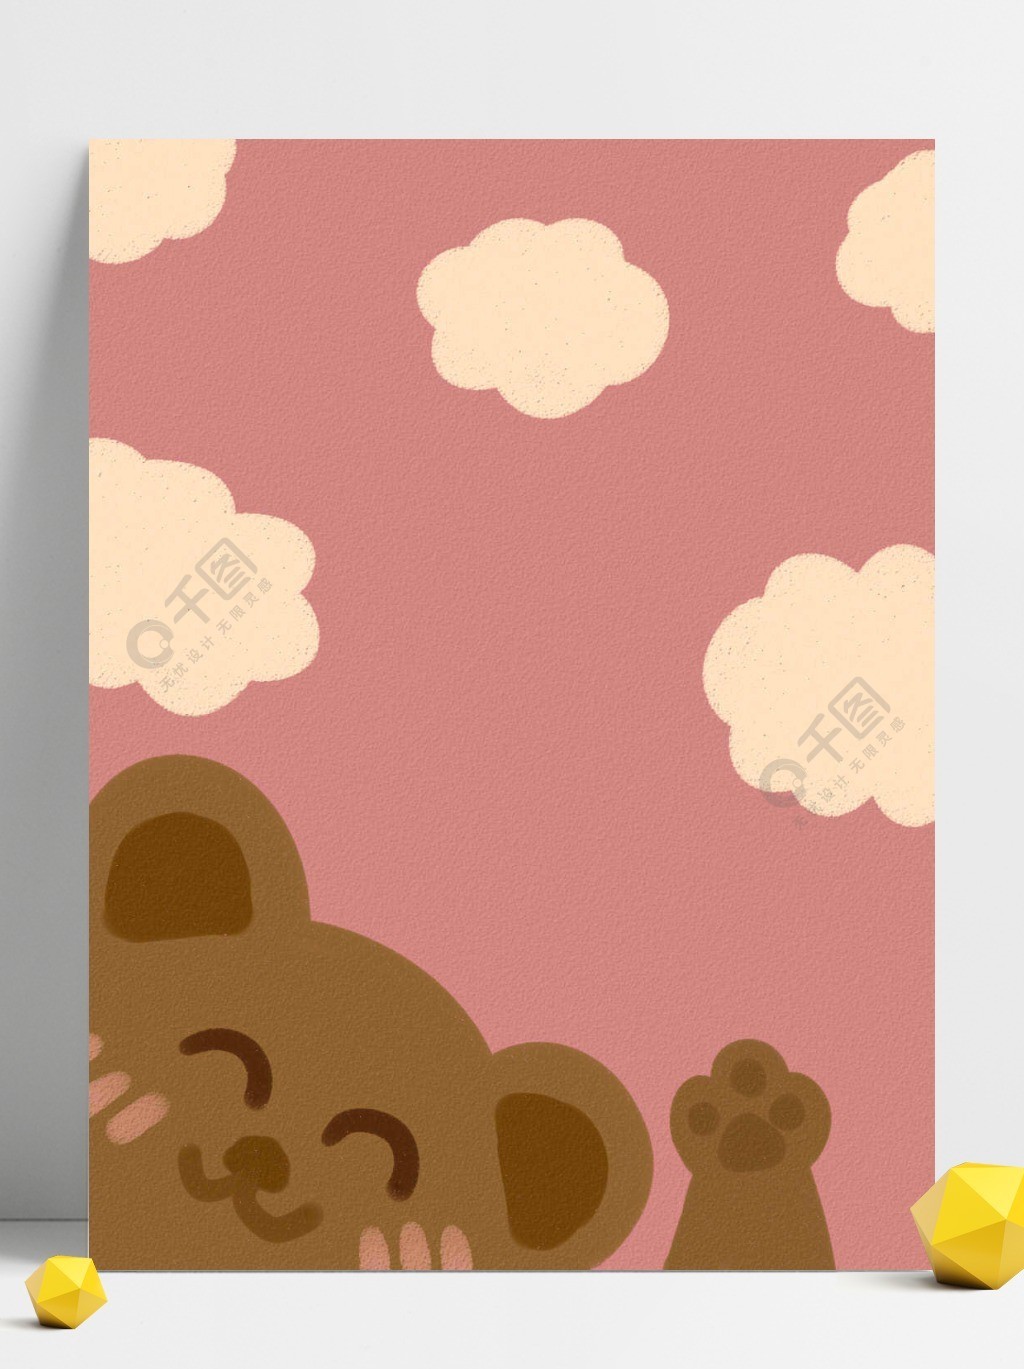 可爱小熊淡黄云彩粉色背景壁纸模板免费下载_psd格式